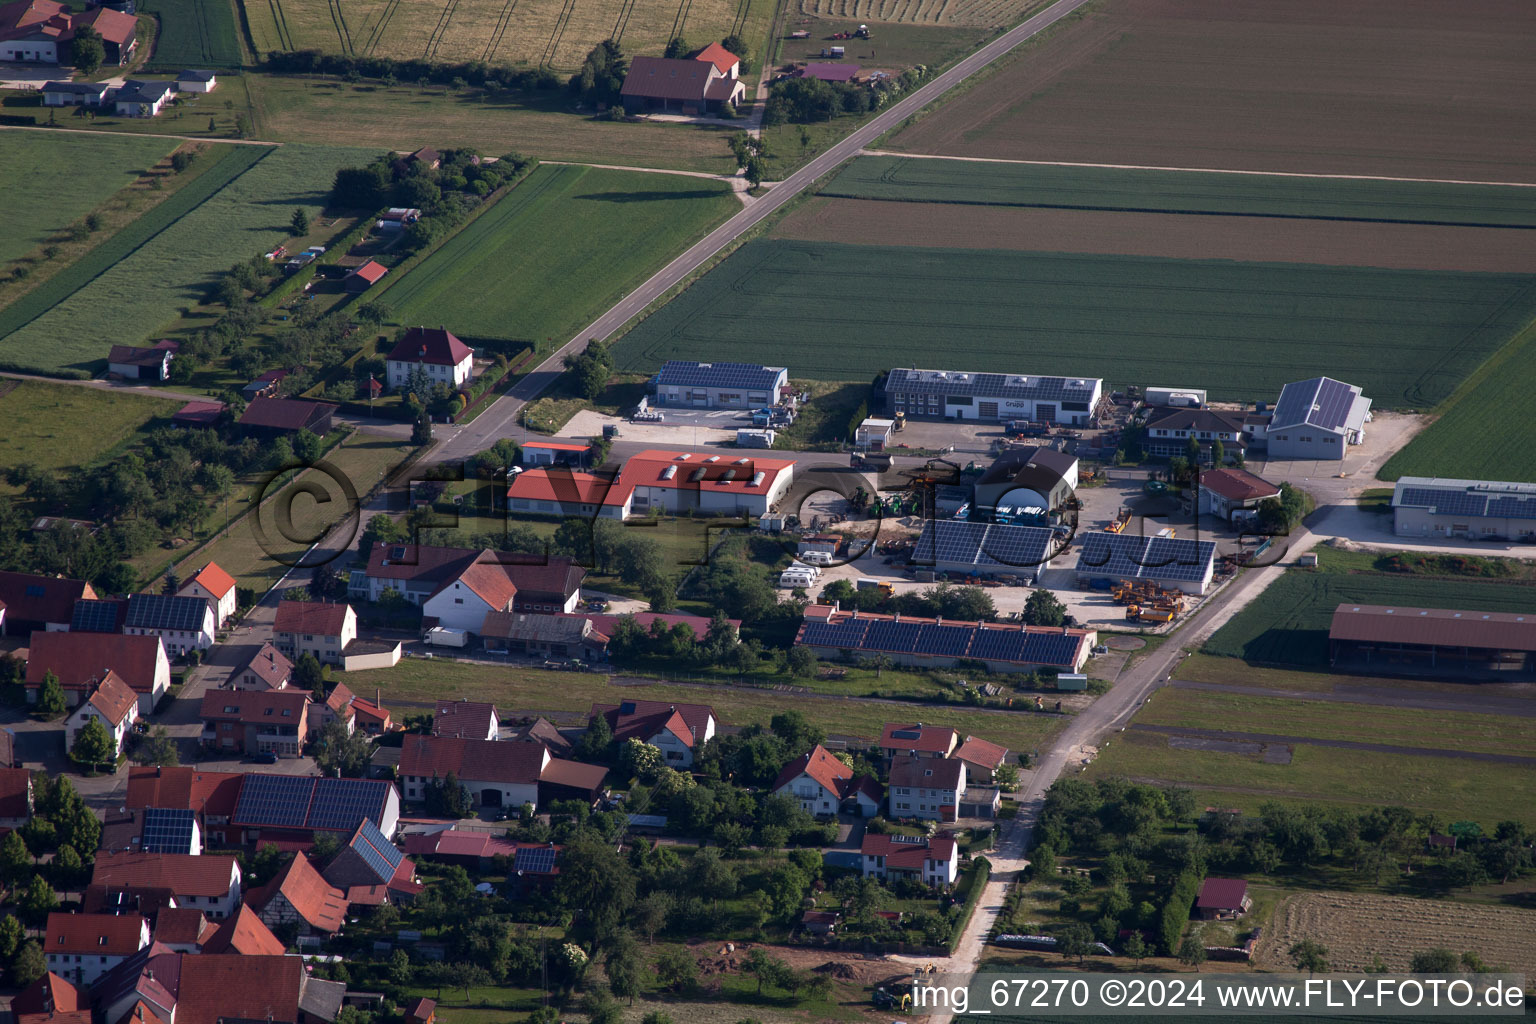 Vue aérienne de Quartier d'Asch à Blaubeuren dans le département Bade-Wurtemberg, Allemagne